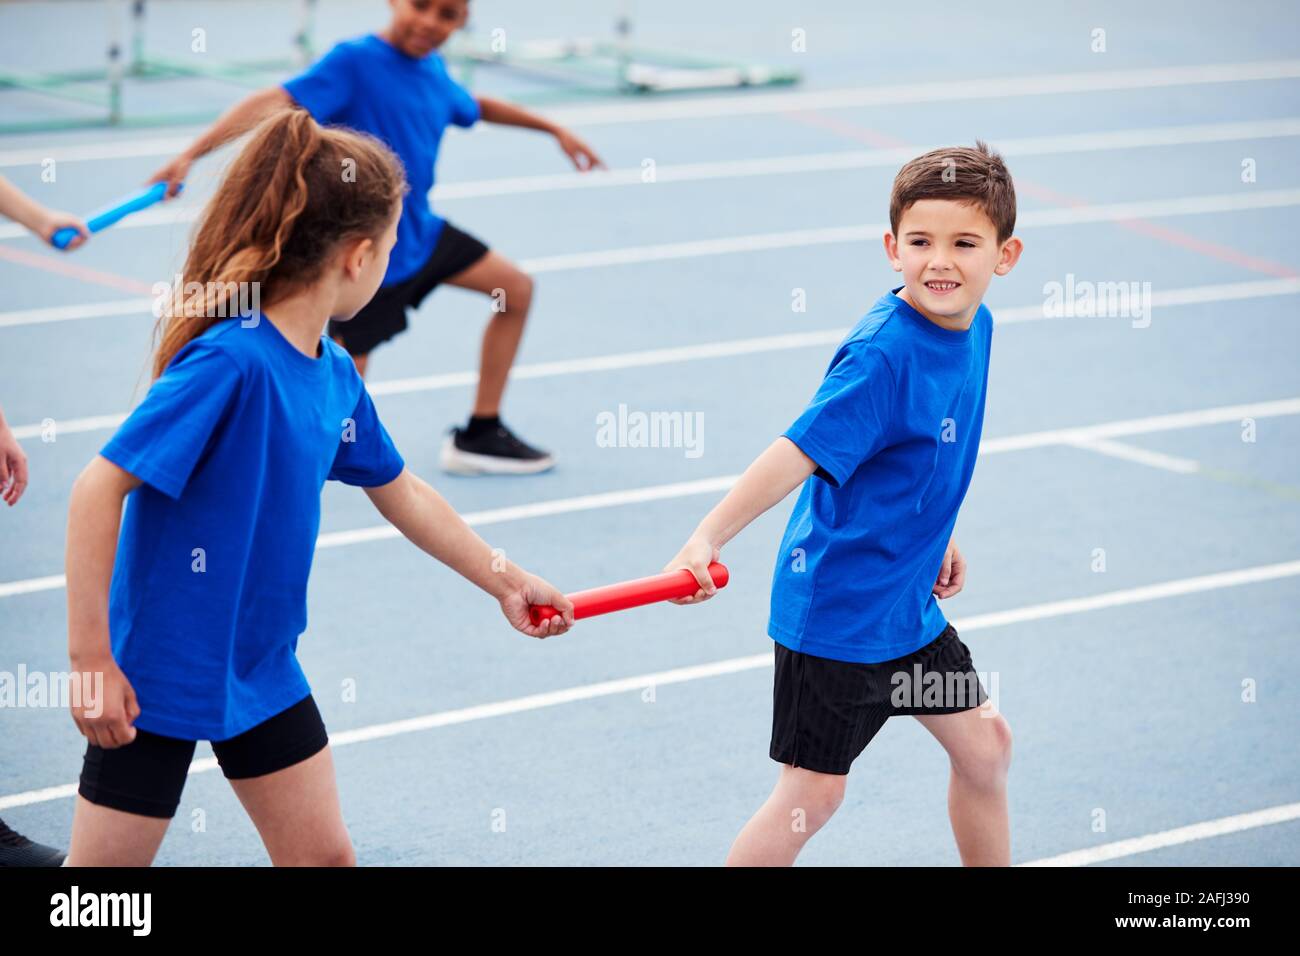 Kinder in der Athletik Team im Staffellauf konkurrierenden auf Sport Tag Stockfoto